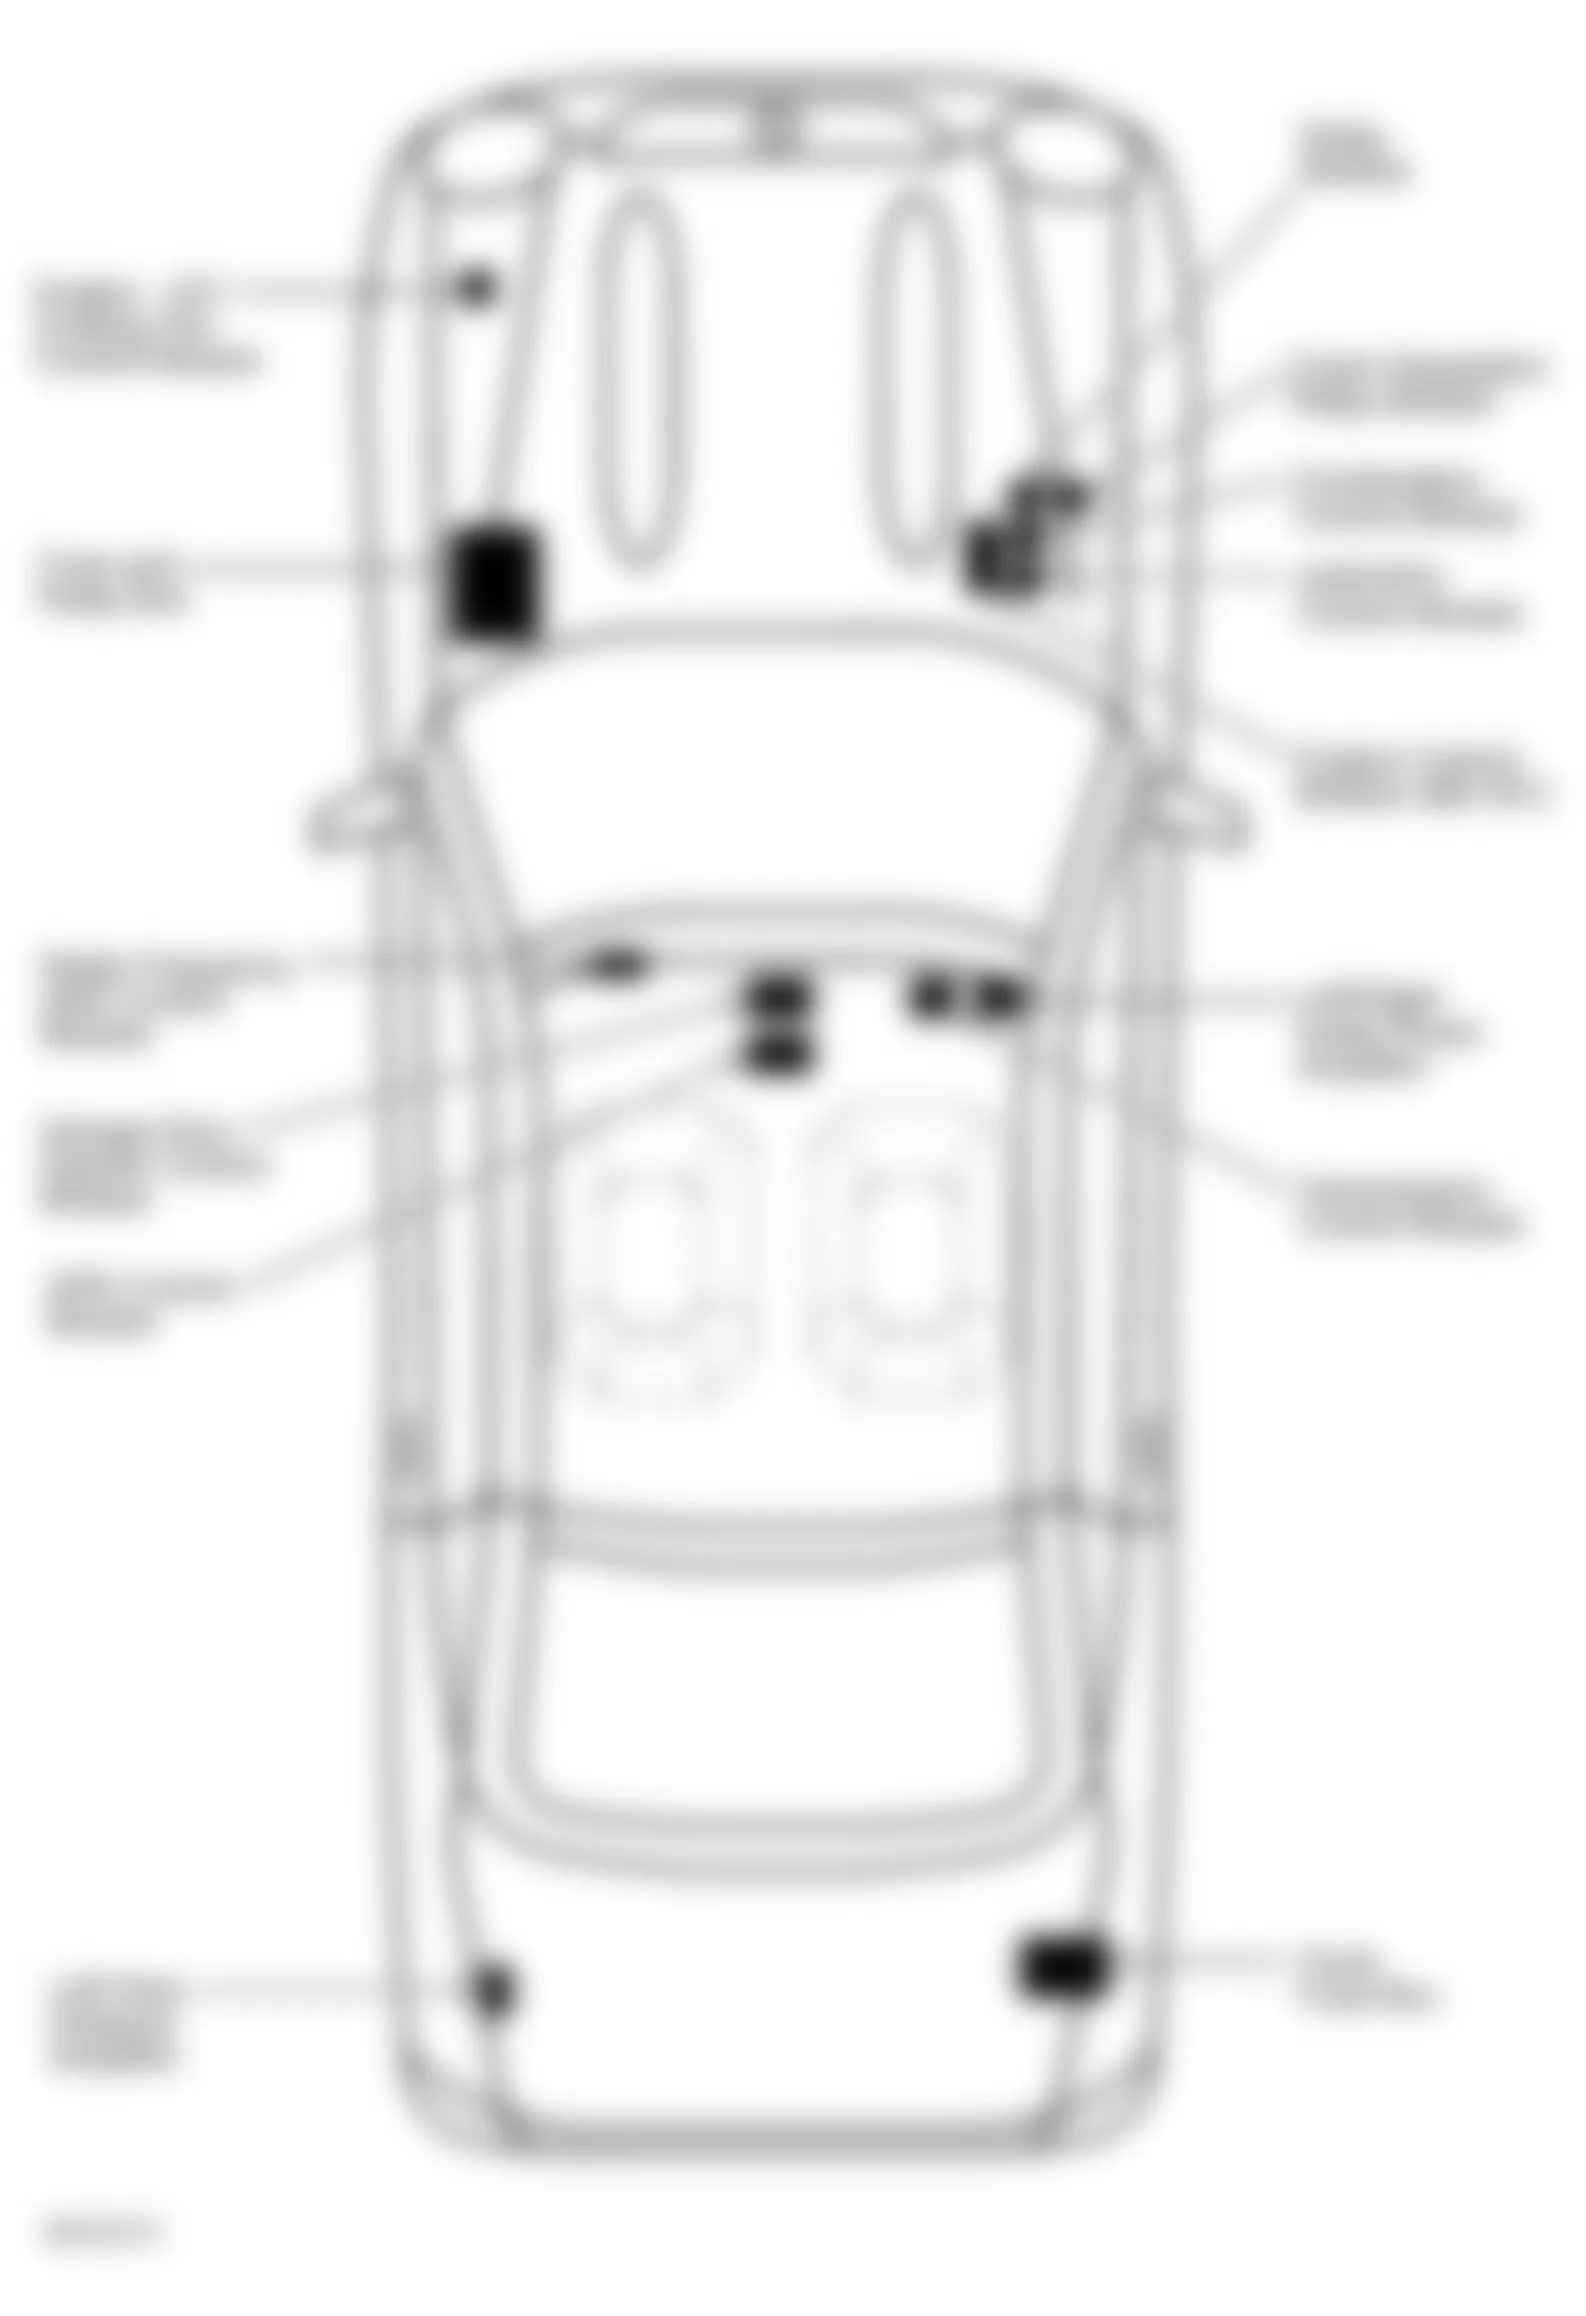 Mercedes-Benz SLK230 2002 - Component Locations -  Locating Trunk Fuse Box F4 (1 Of 2)